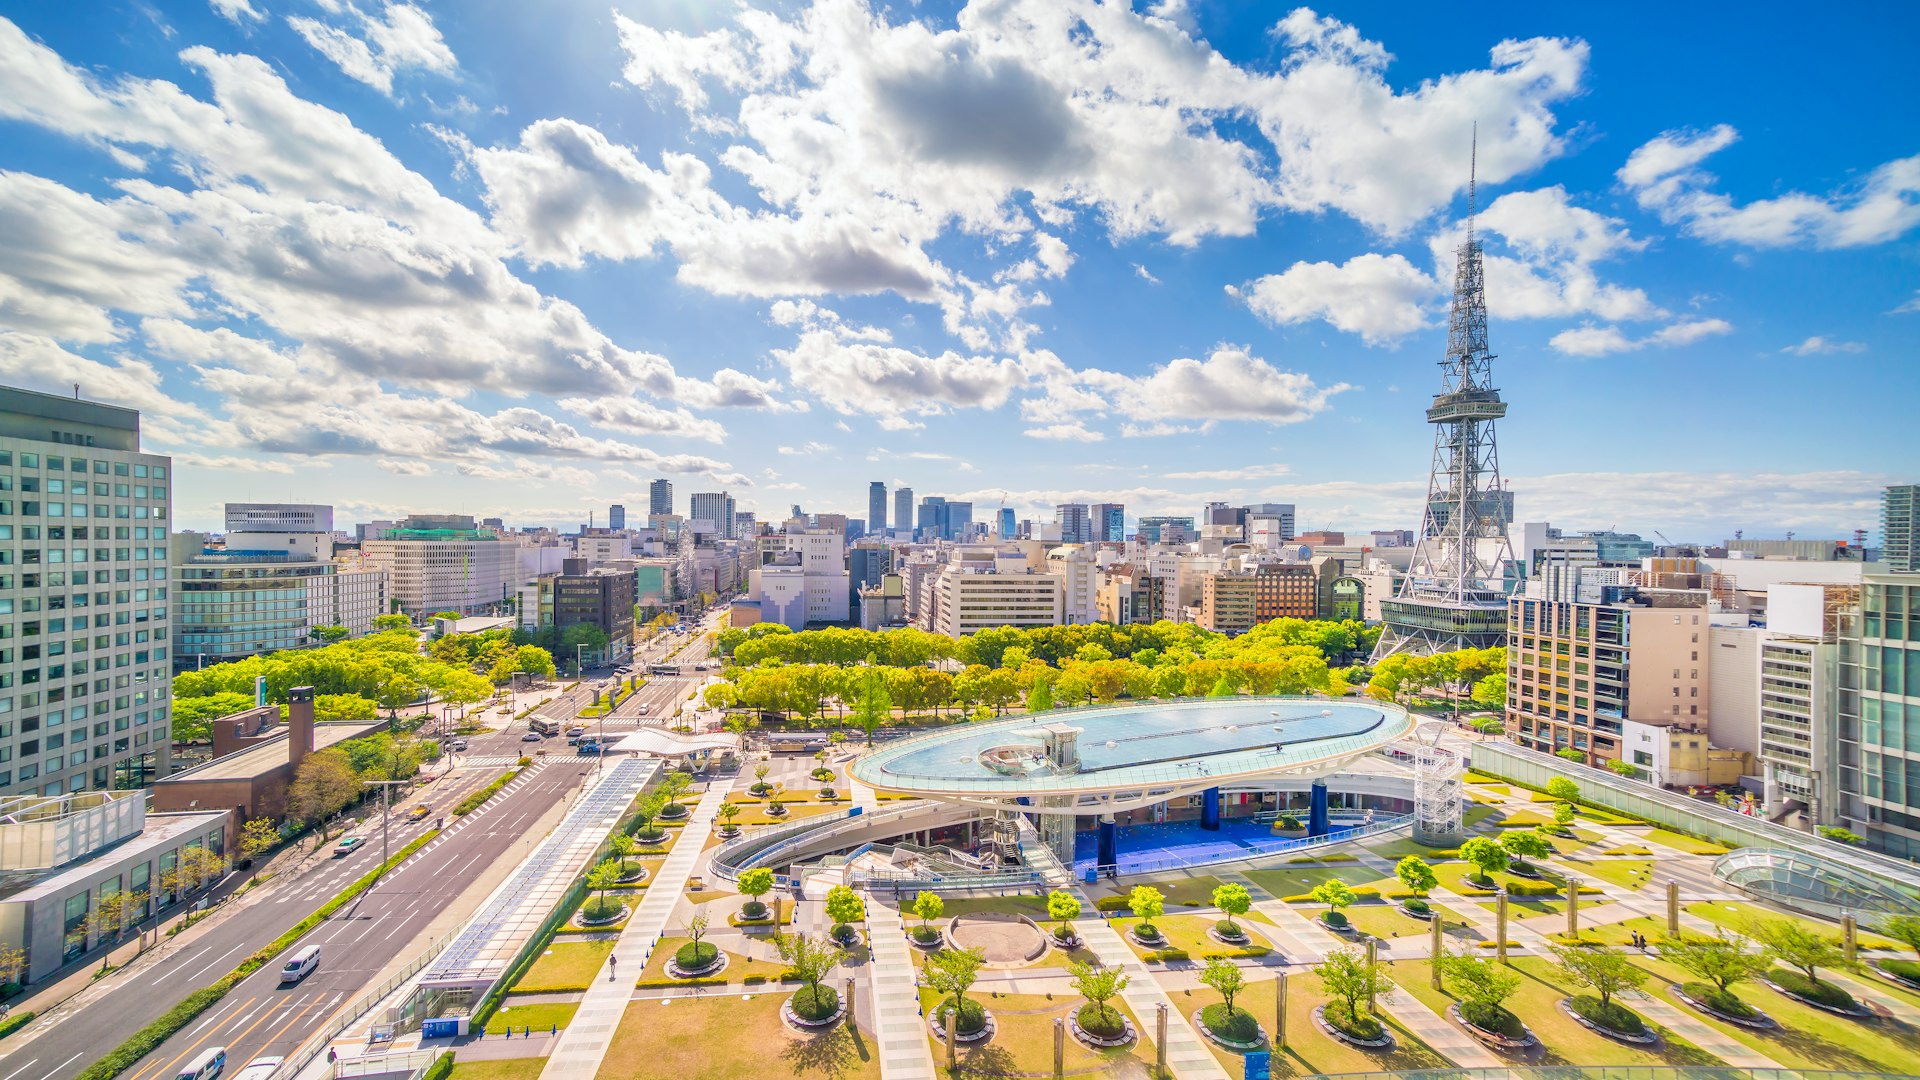 Downtown Nagoya skyline on a sunny day